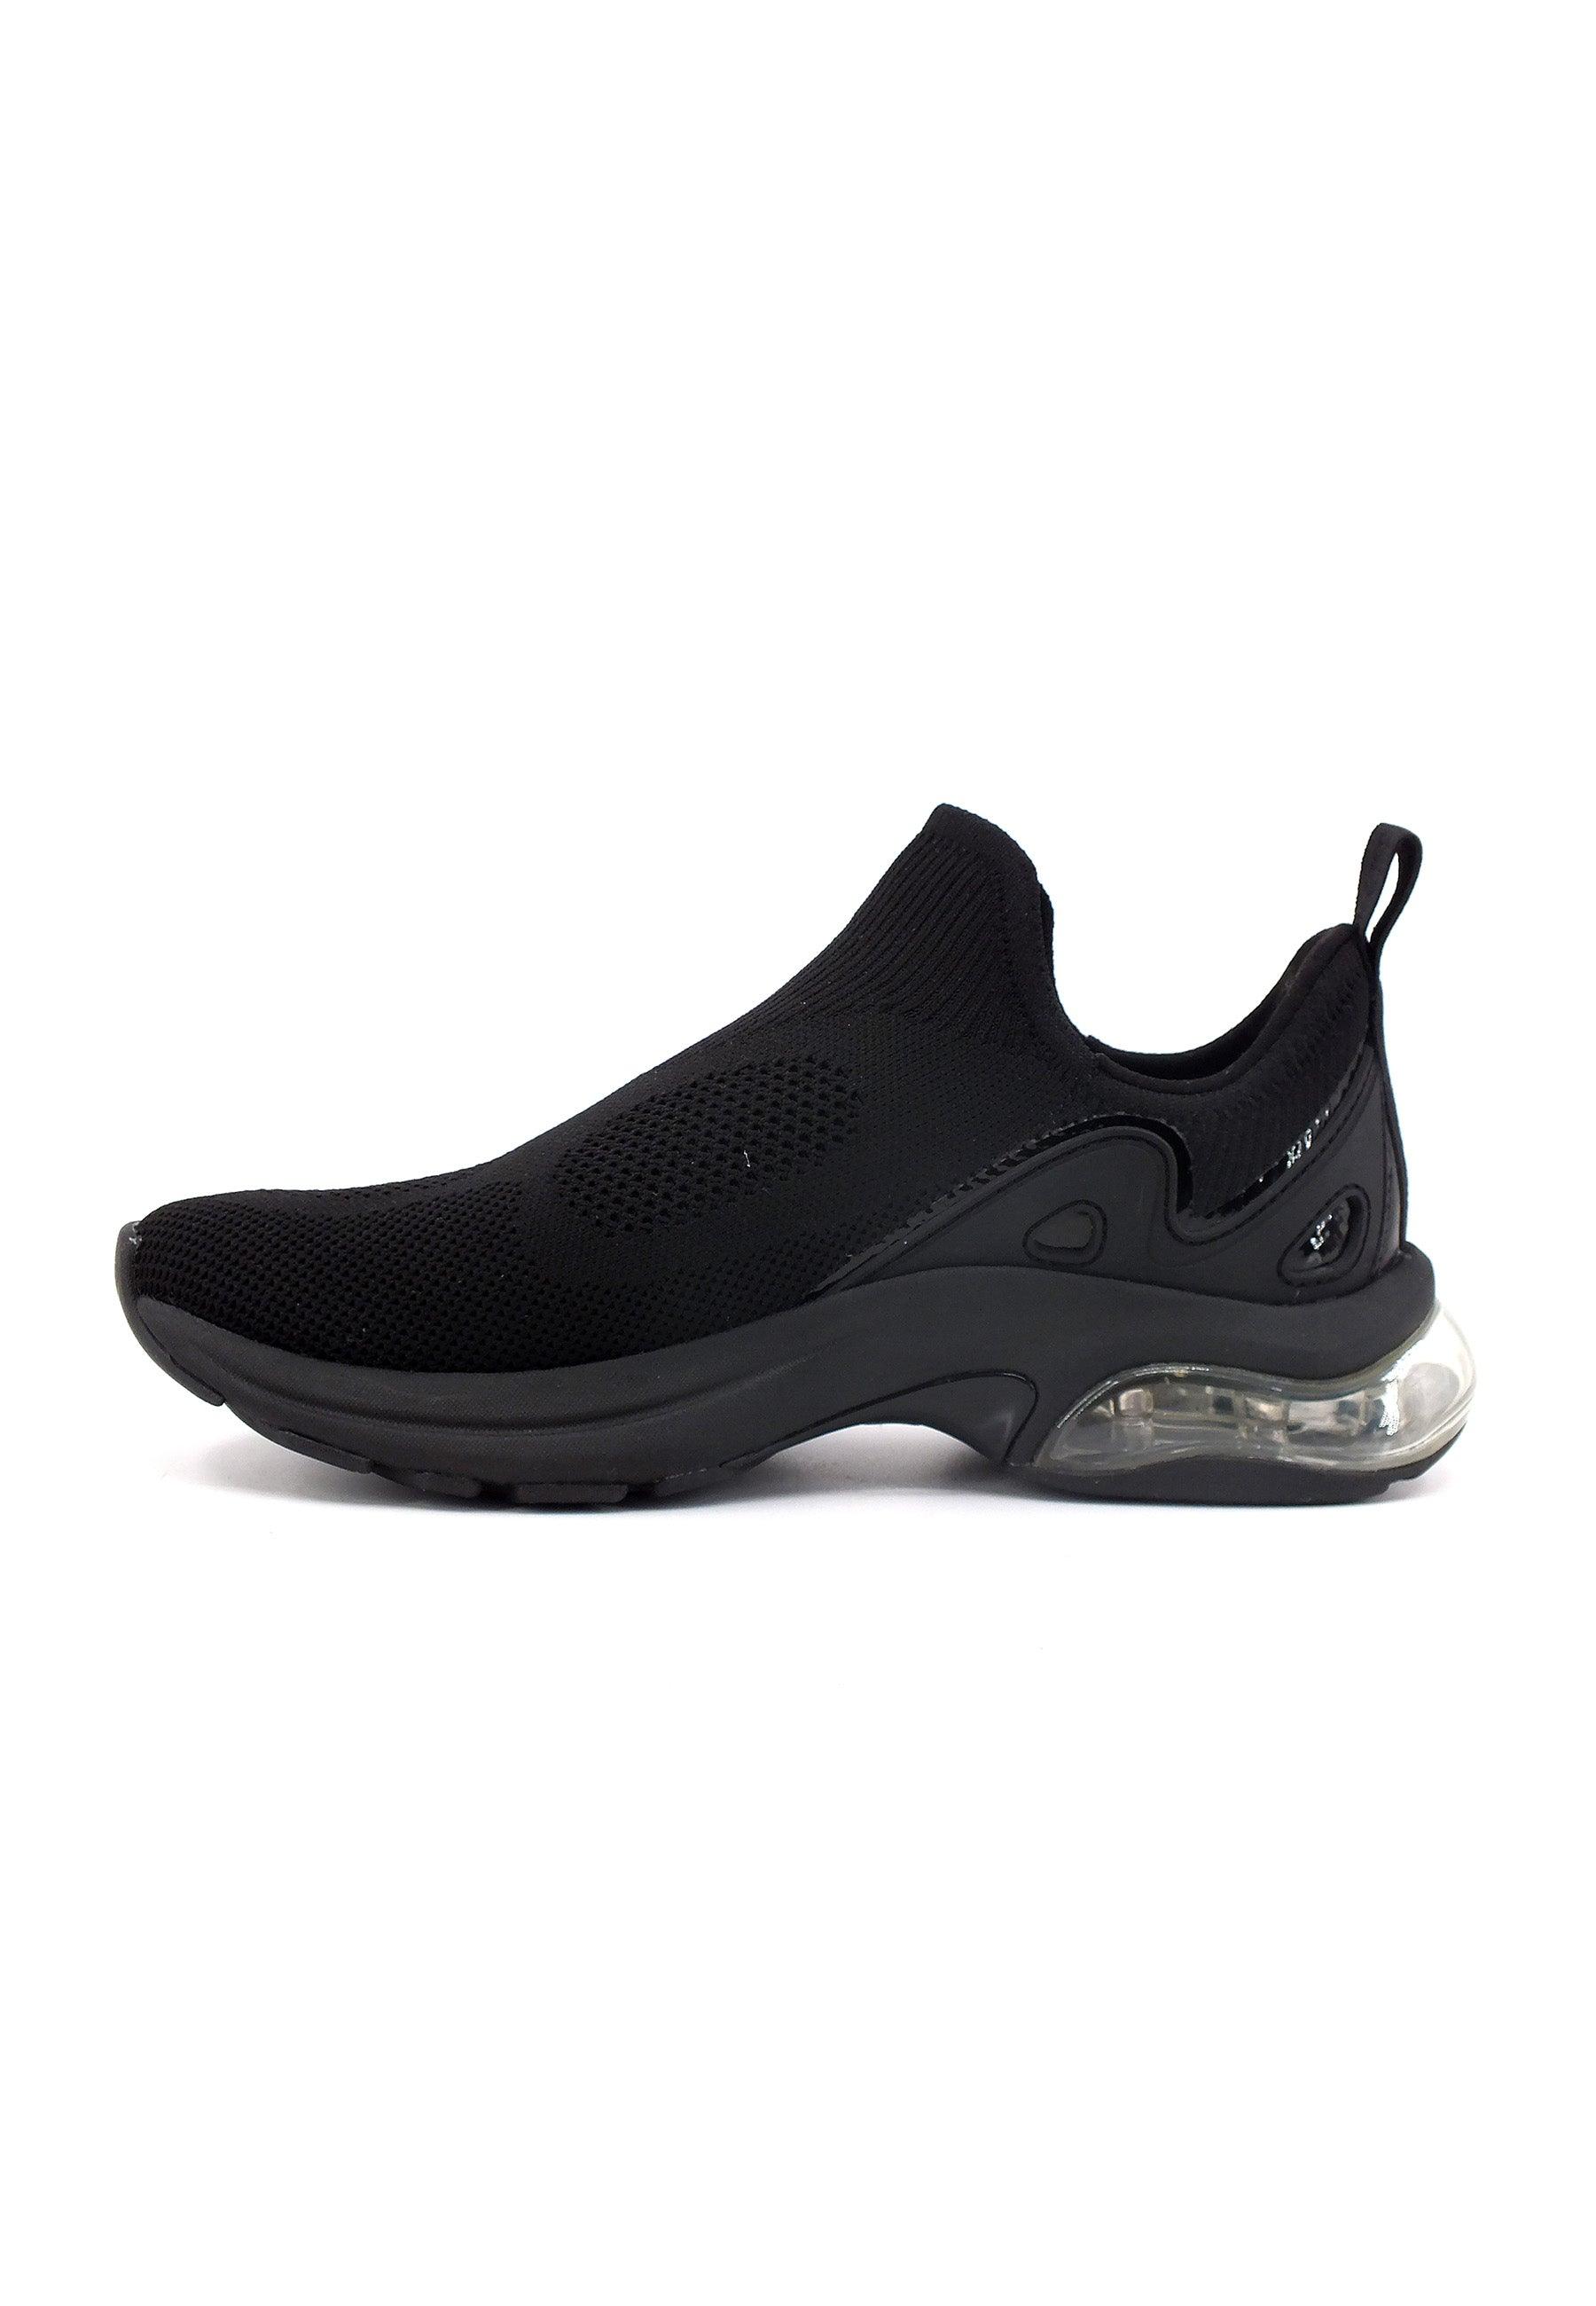 MICHAEL KORS Kit Slip On Extreme Sneaker Donna Black 43F3KIFP2D - Sandrini Calzature e Abbigliamento